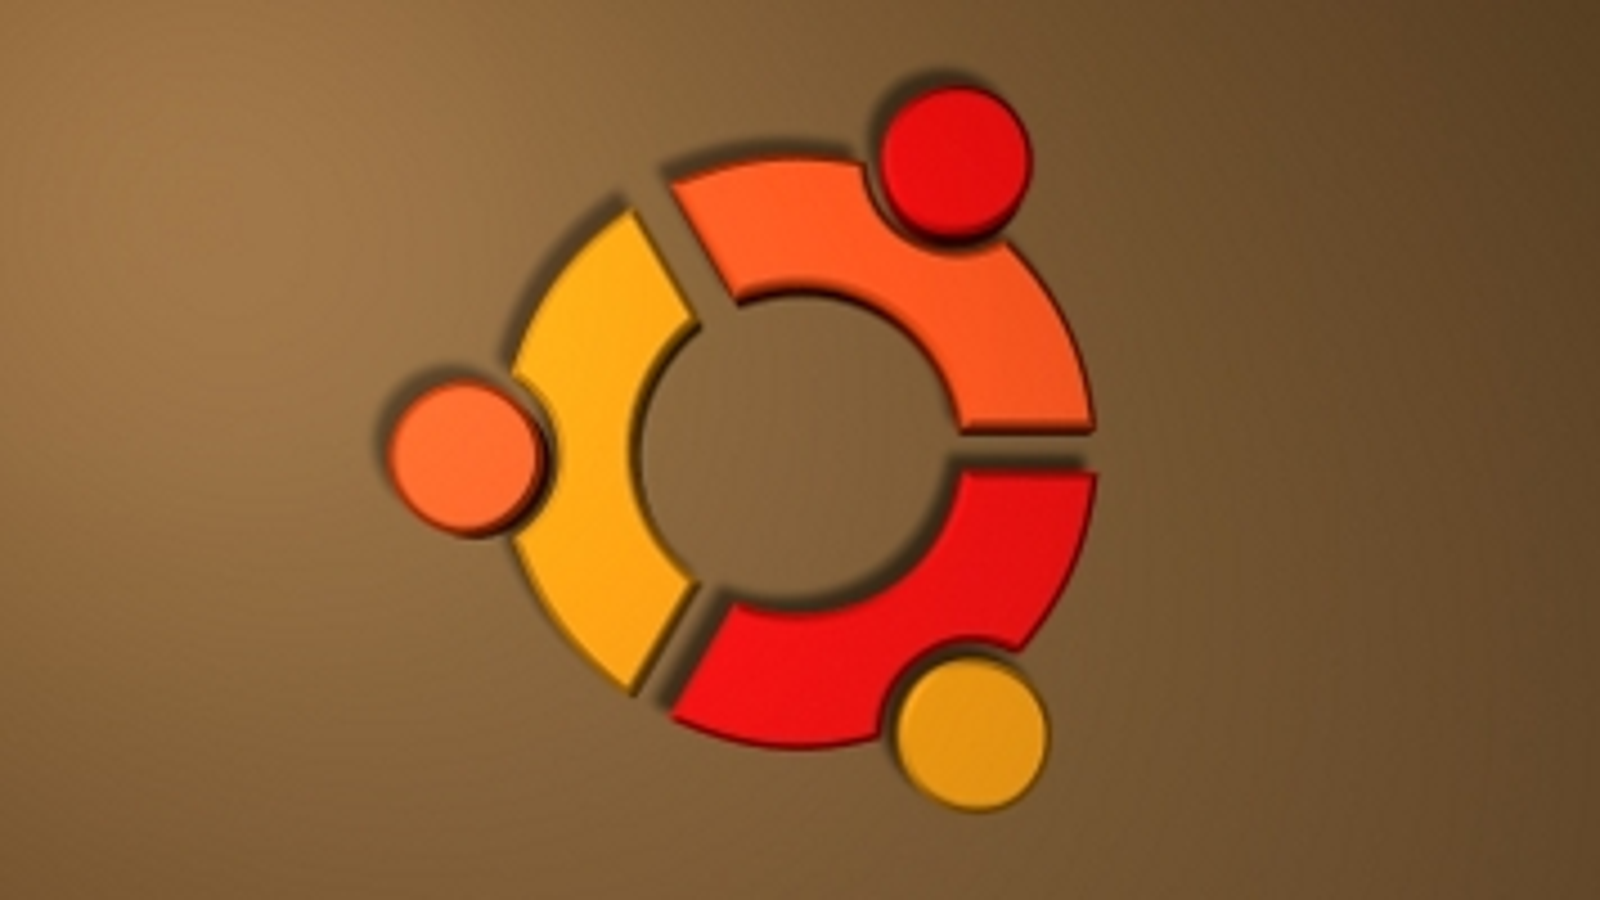 ubuntu 20.04 download